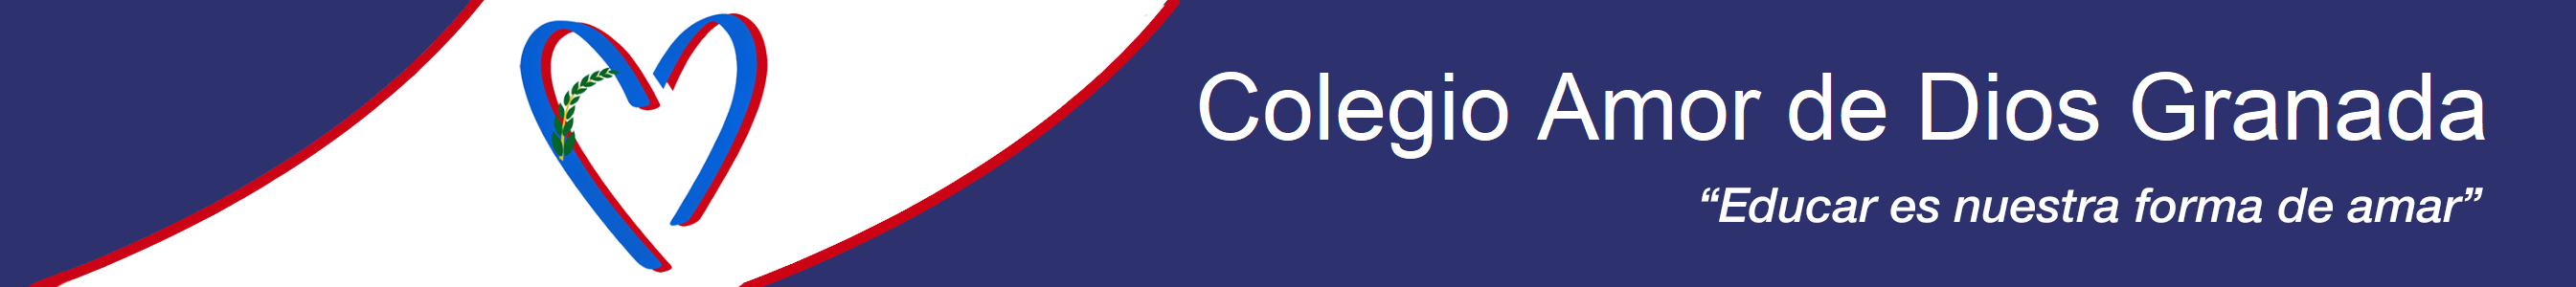 Logo Colegio Amor de Dios